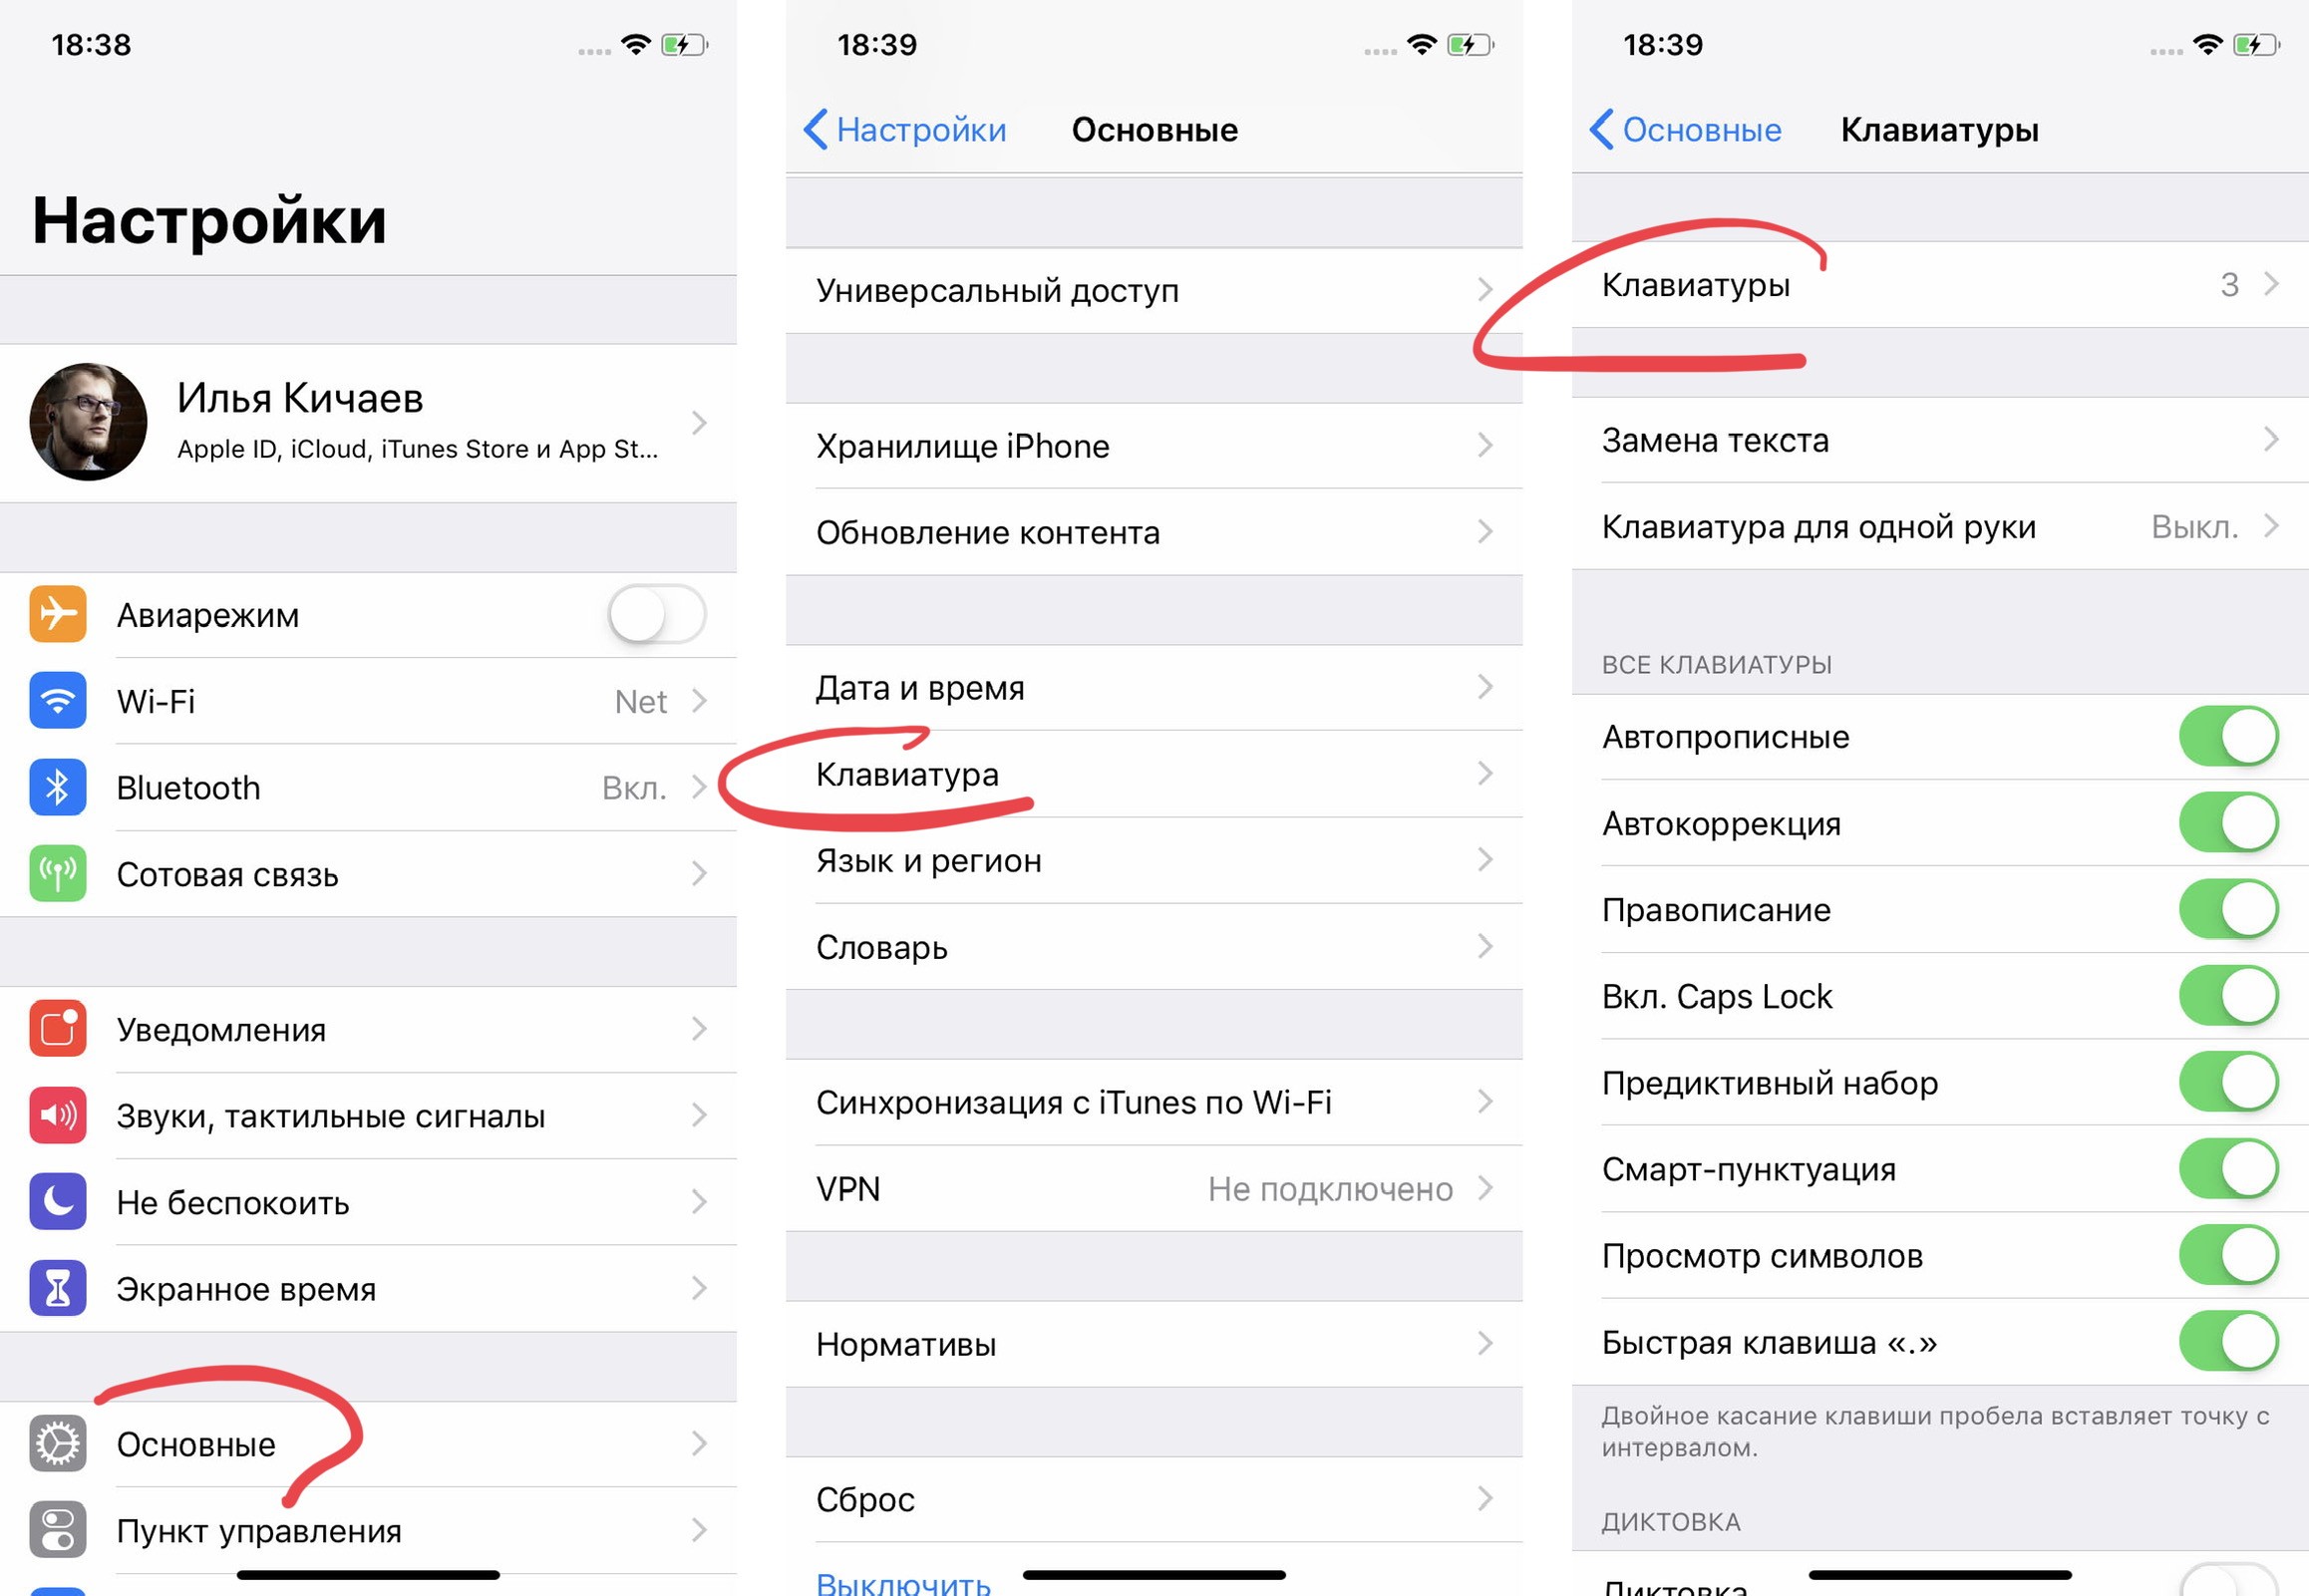 Как изменить язык в телеграмме на русский на айфоне фото 112